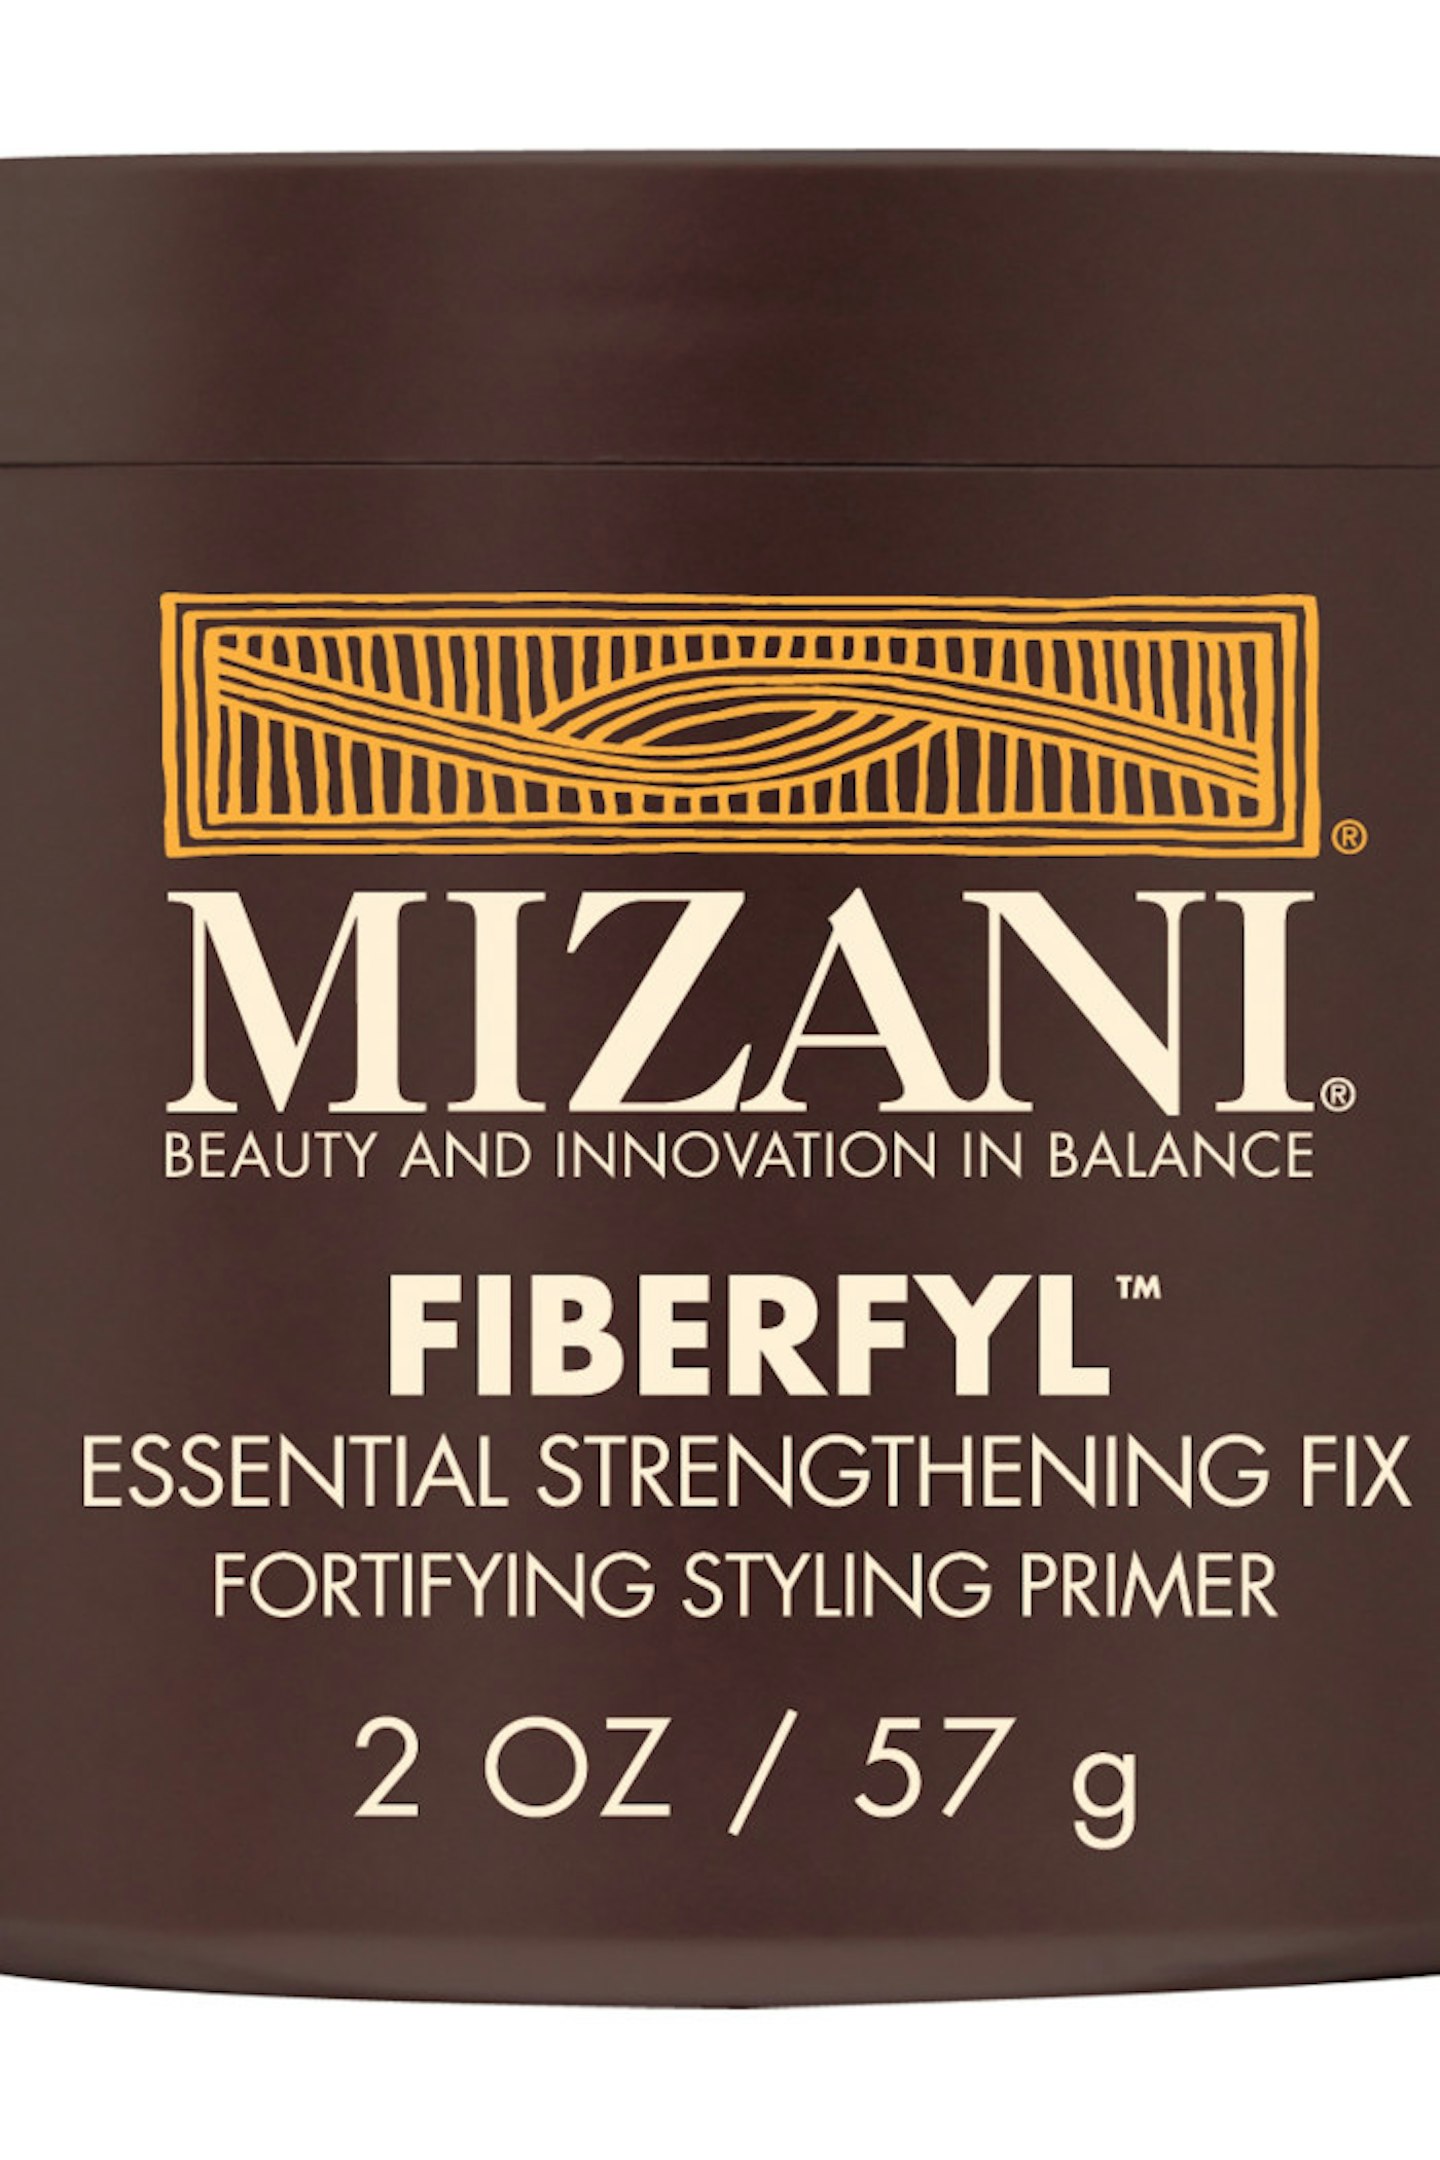 Mizani Fiberfyl Essential Strengthening Fix, £9.55